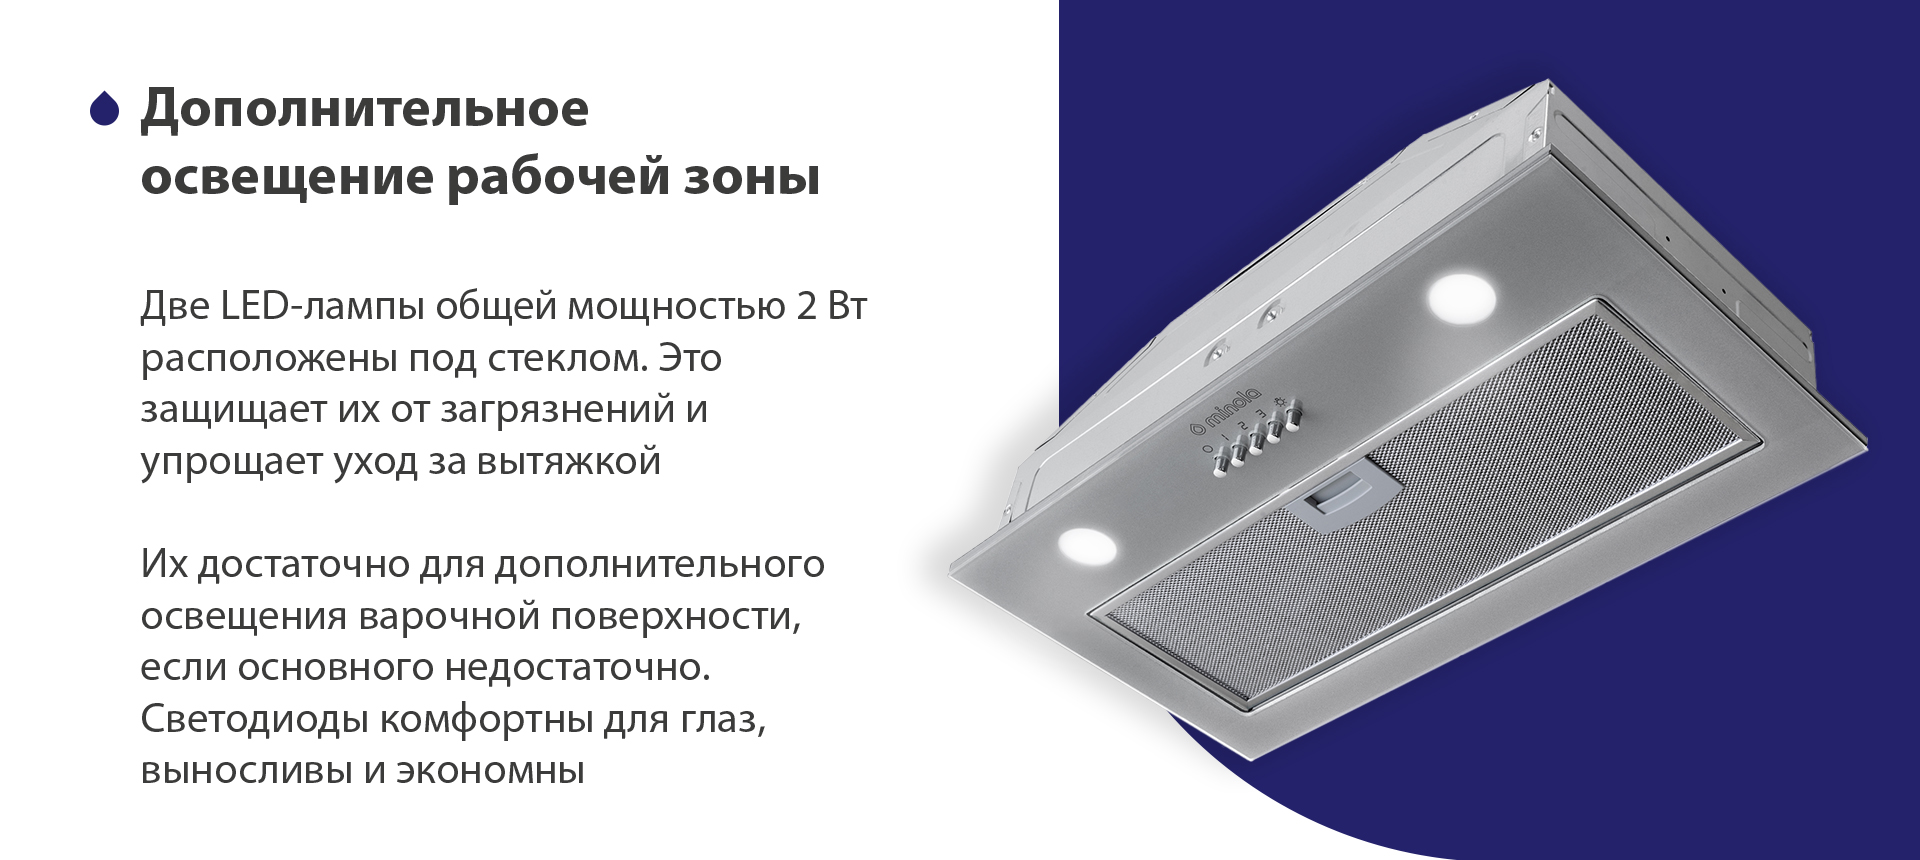 Две LED-лампы общей мощностью 2 Вт расположены под стеклом. Это защищает их от загрязнений и упрощает уход за вытяжкой. Их достаточно для дополнительного освещения варочной поверхности, если основного недостаточно. Светодиоды комфортны для глаз, выносливы и экономны